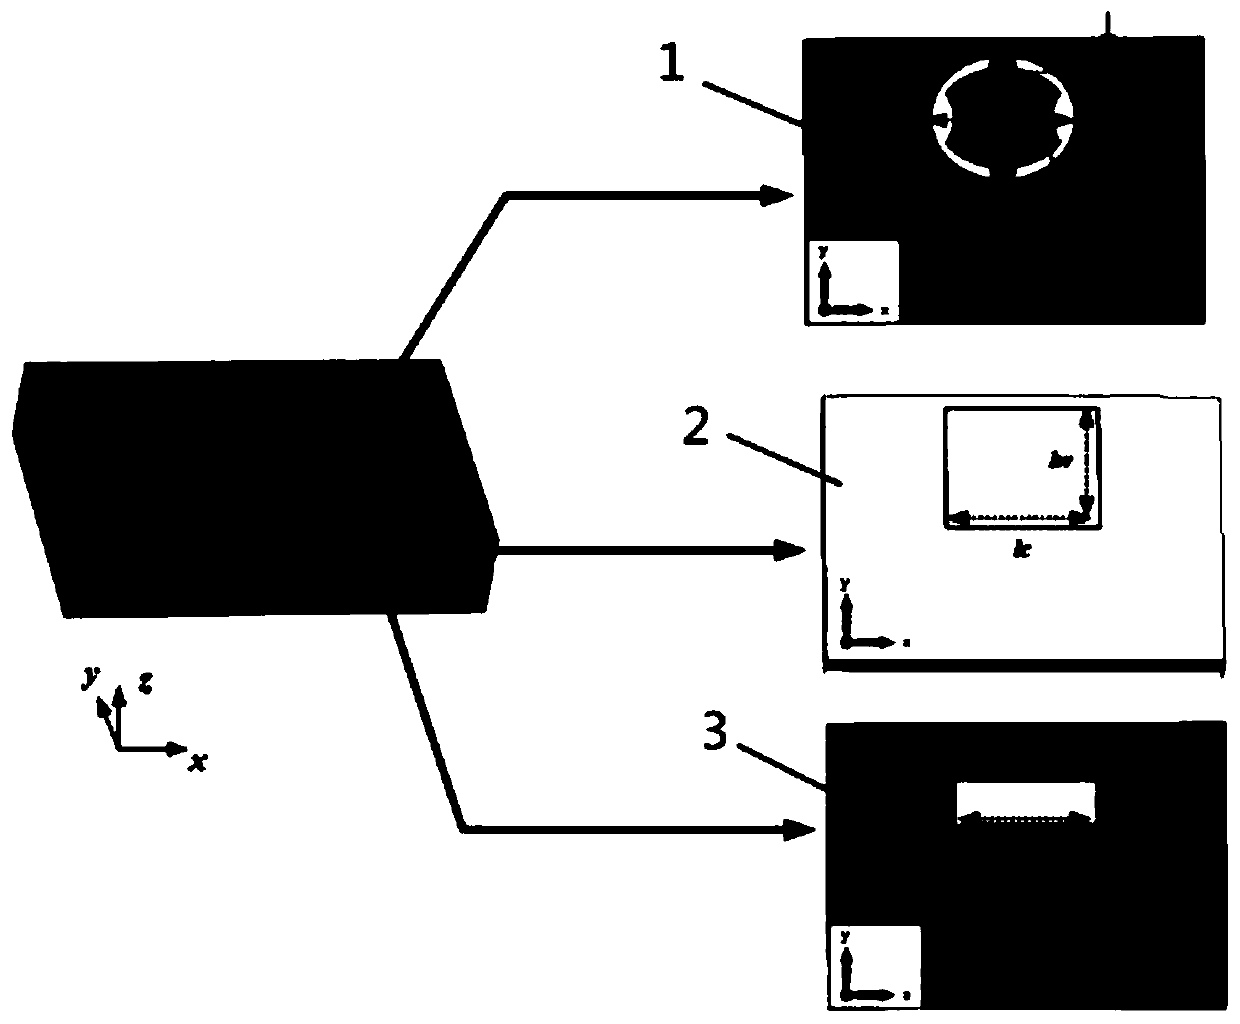 Metamaterial unit for encoding metamaterial antenna